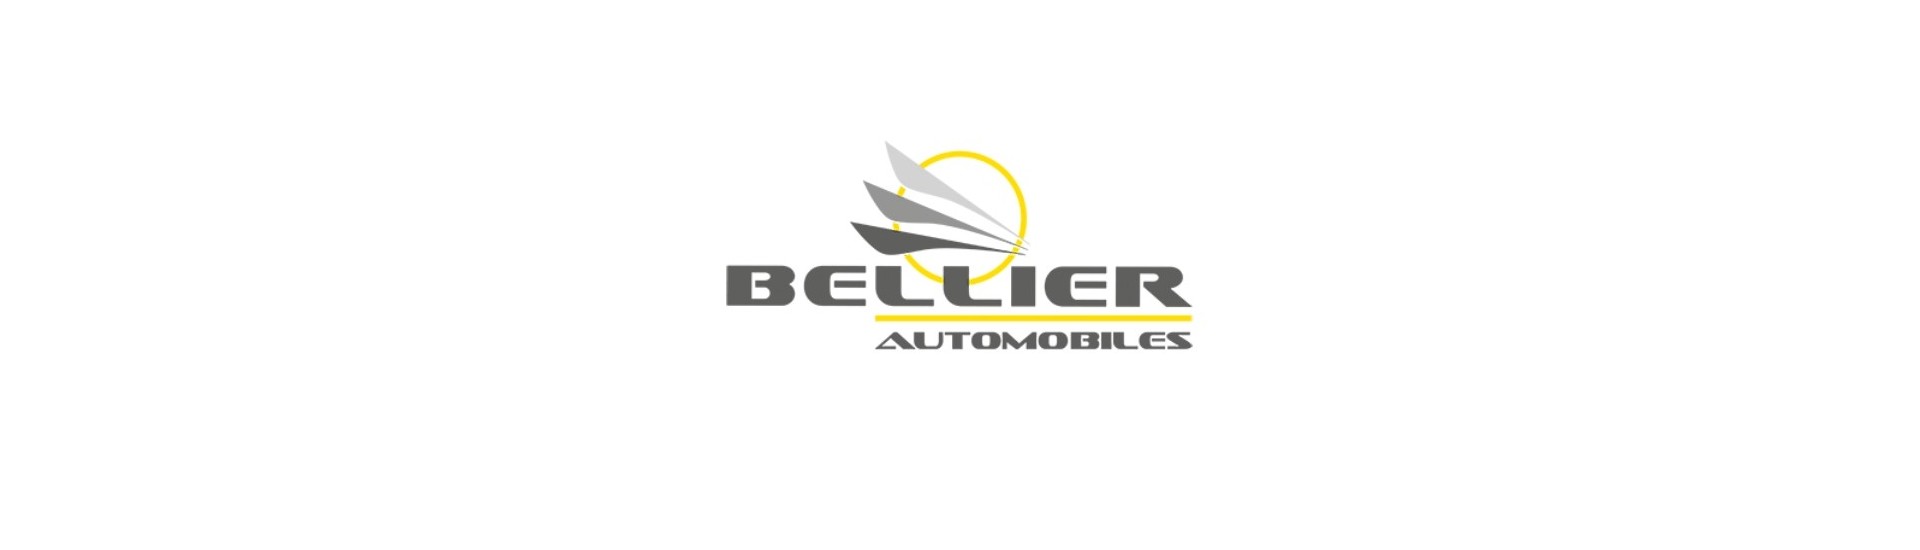 Soporte radiador al mejor precio para coche sin permiso Bellier